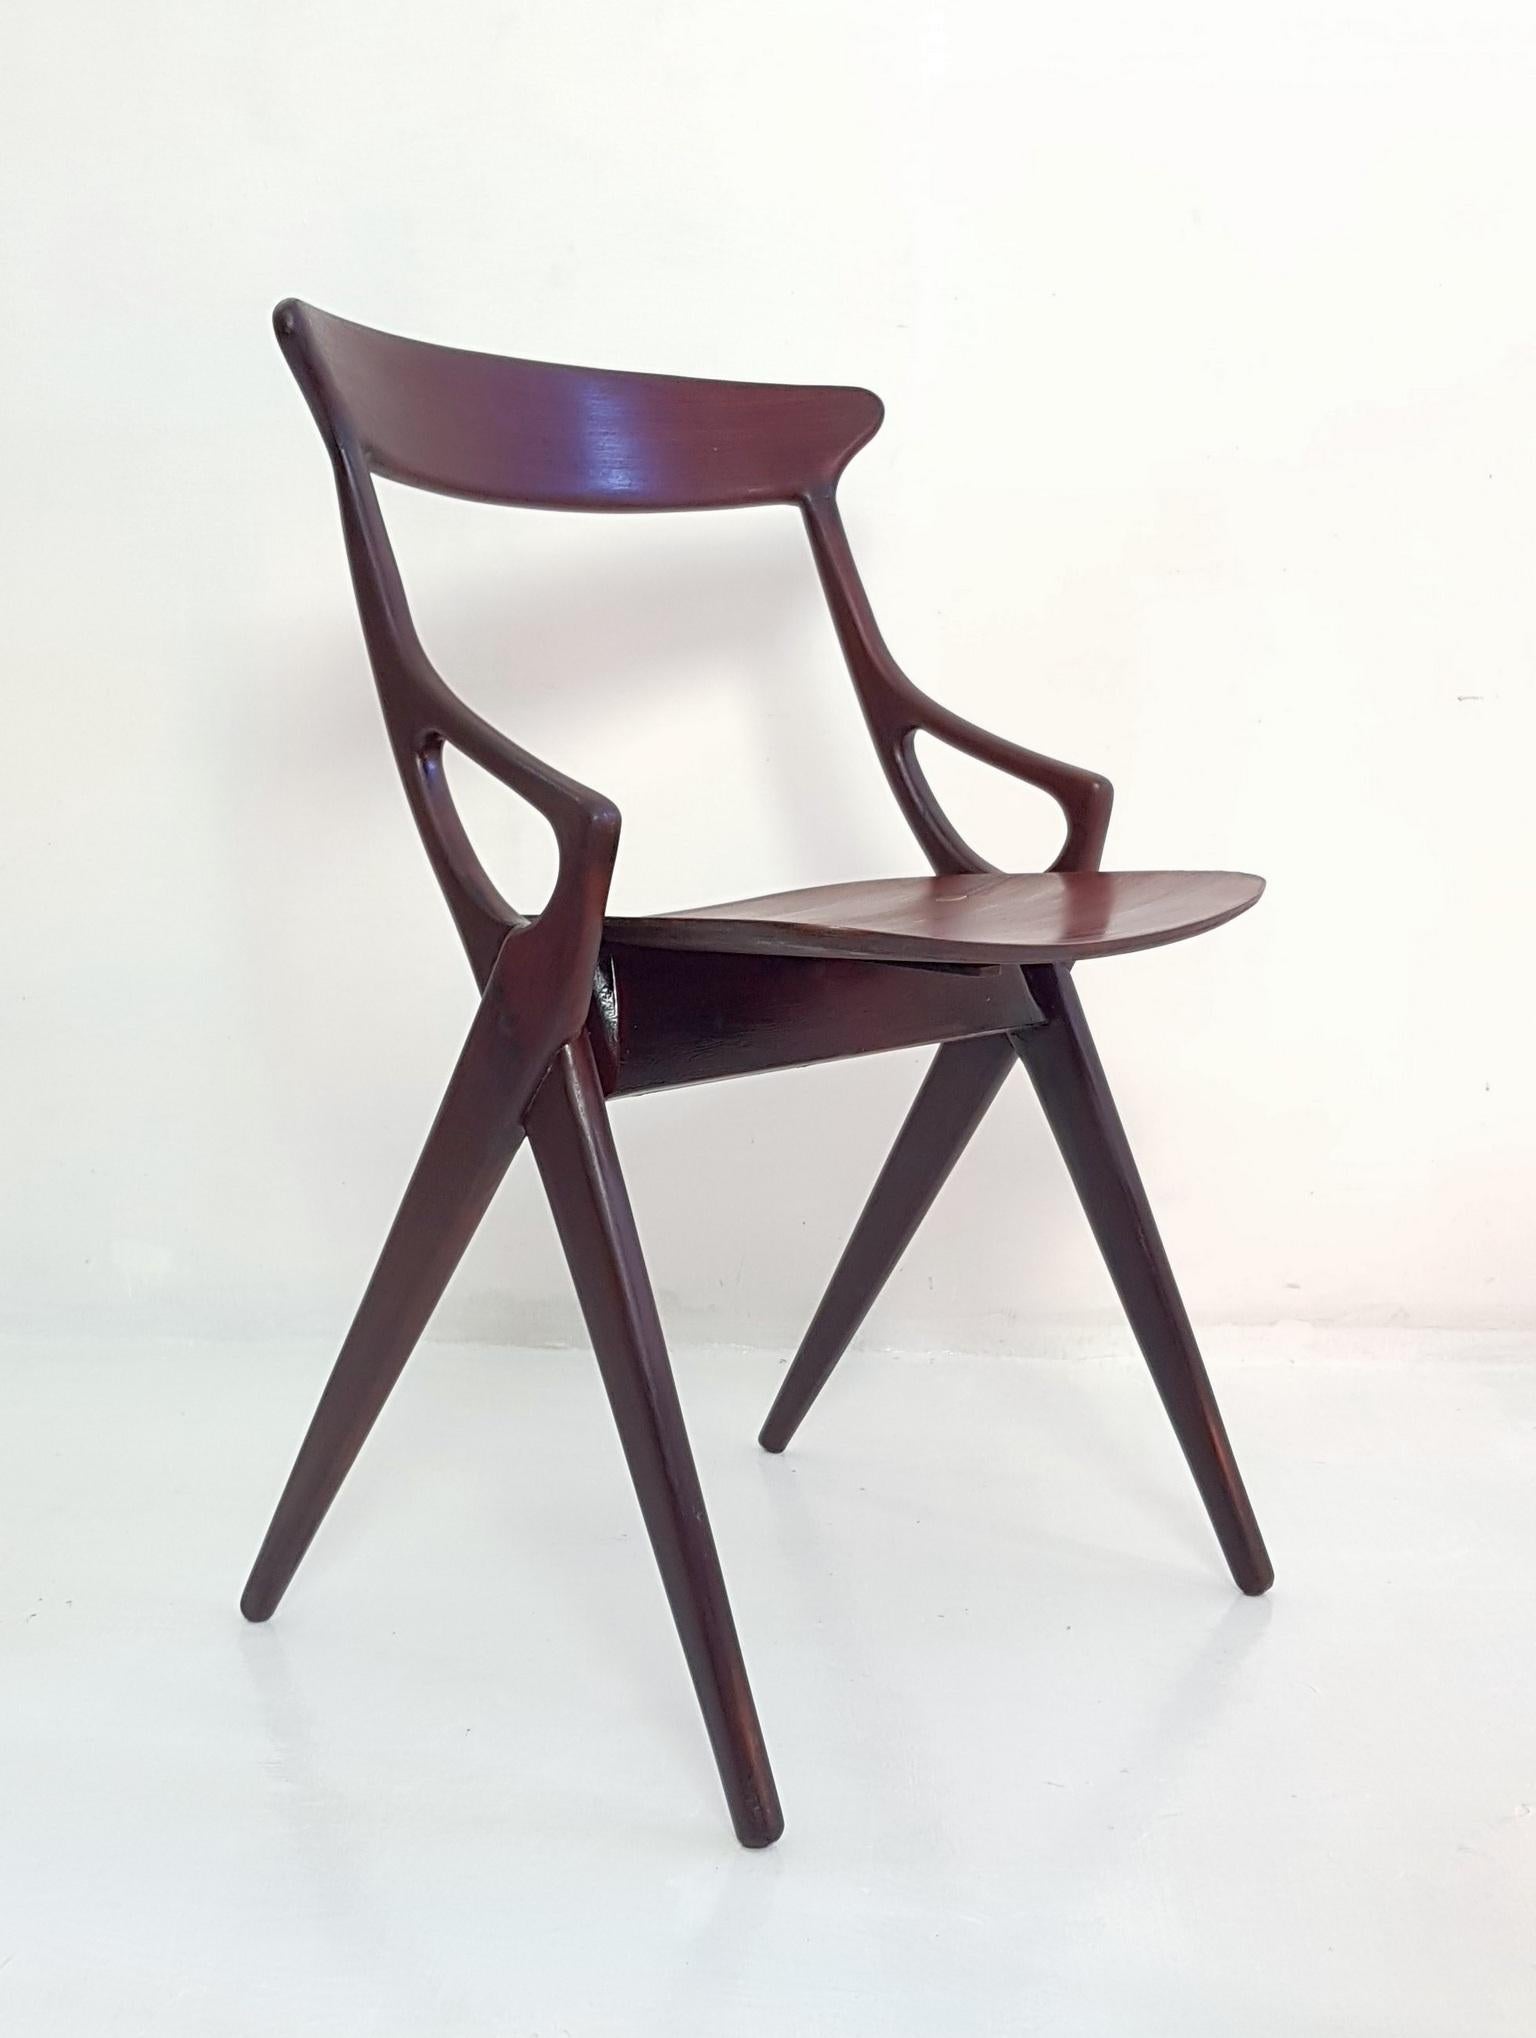 20th Century Set of 4 Dining Chairs by Arne Hovmand Olsen for Mogens Kold Denmark 1959